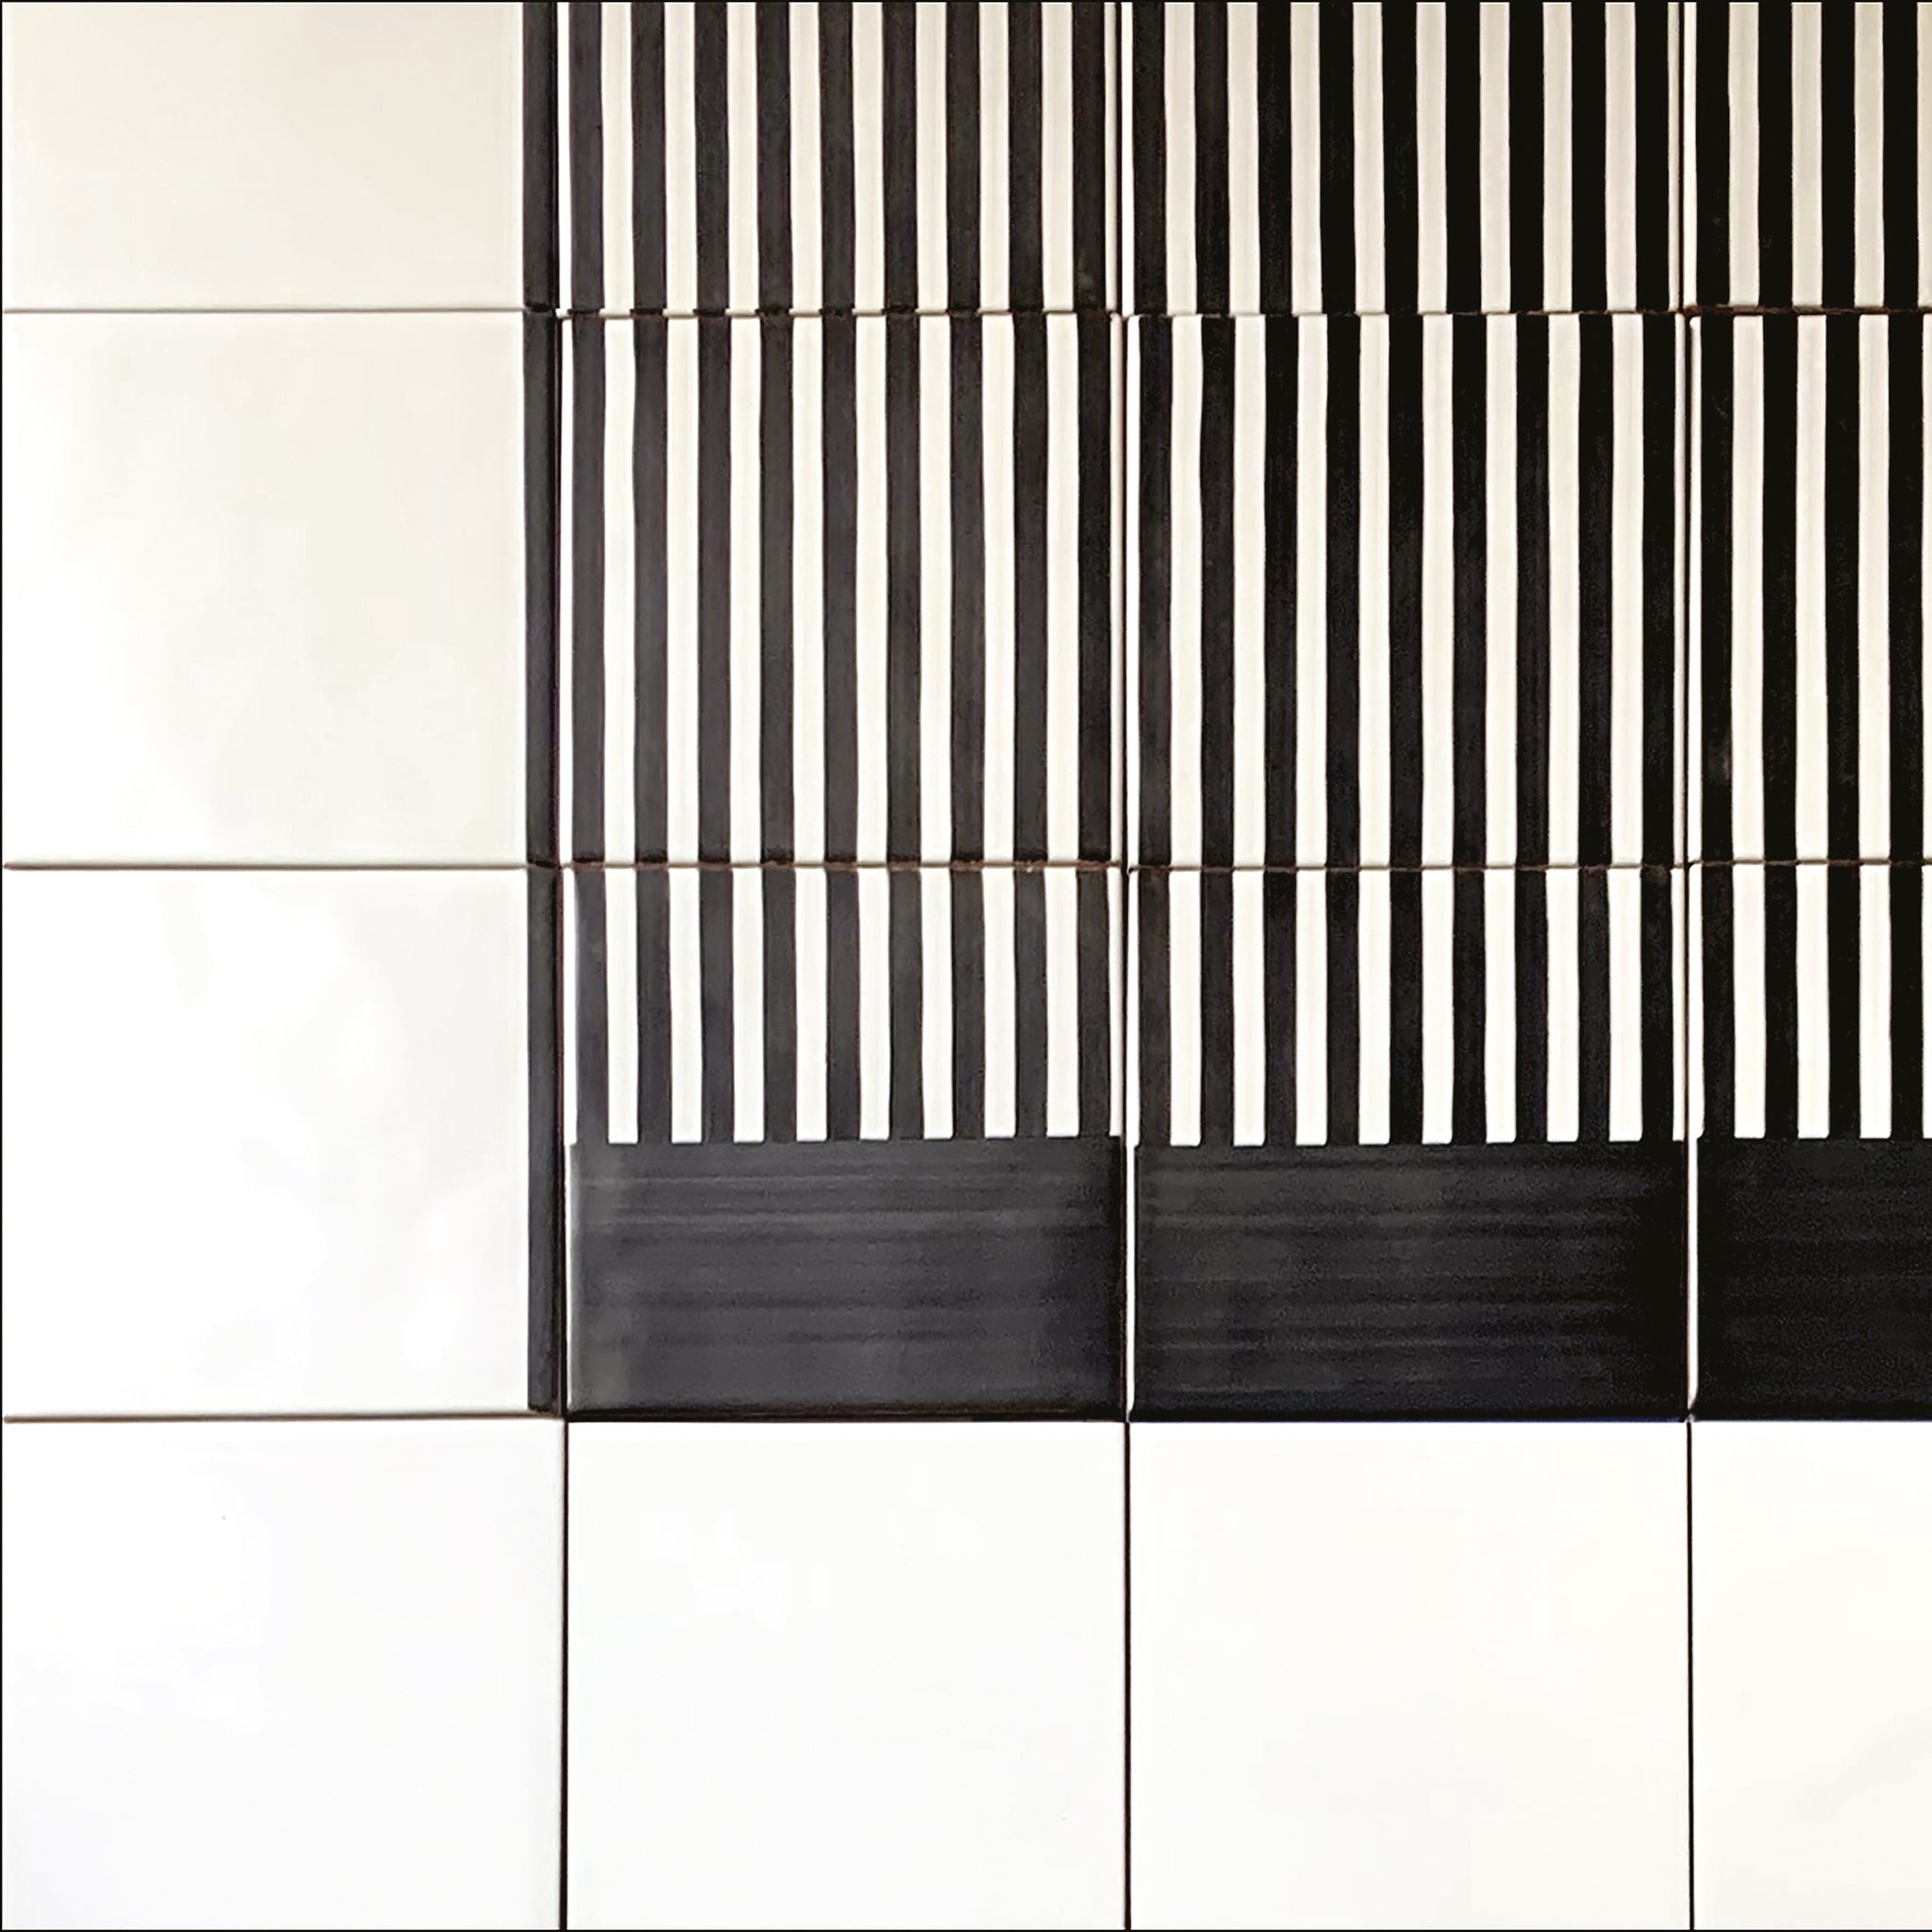 Carpet Black and White Ceramic Composition by Giuliano Andrea dell’Uva 160 X 120 - Alternative view 1